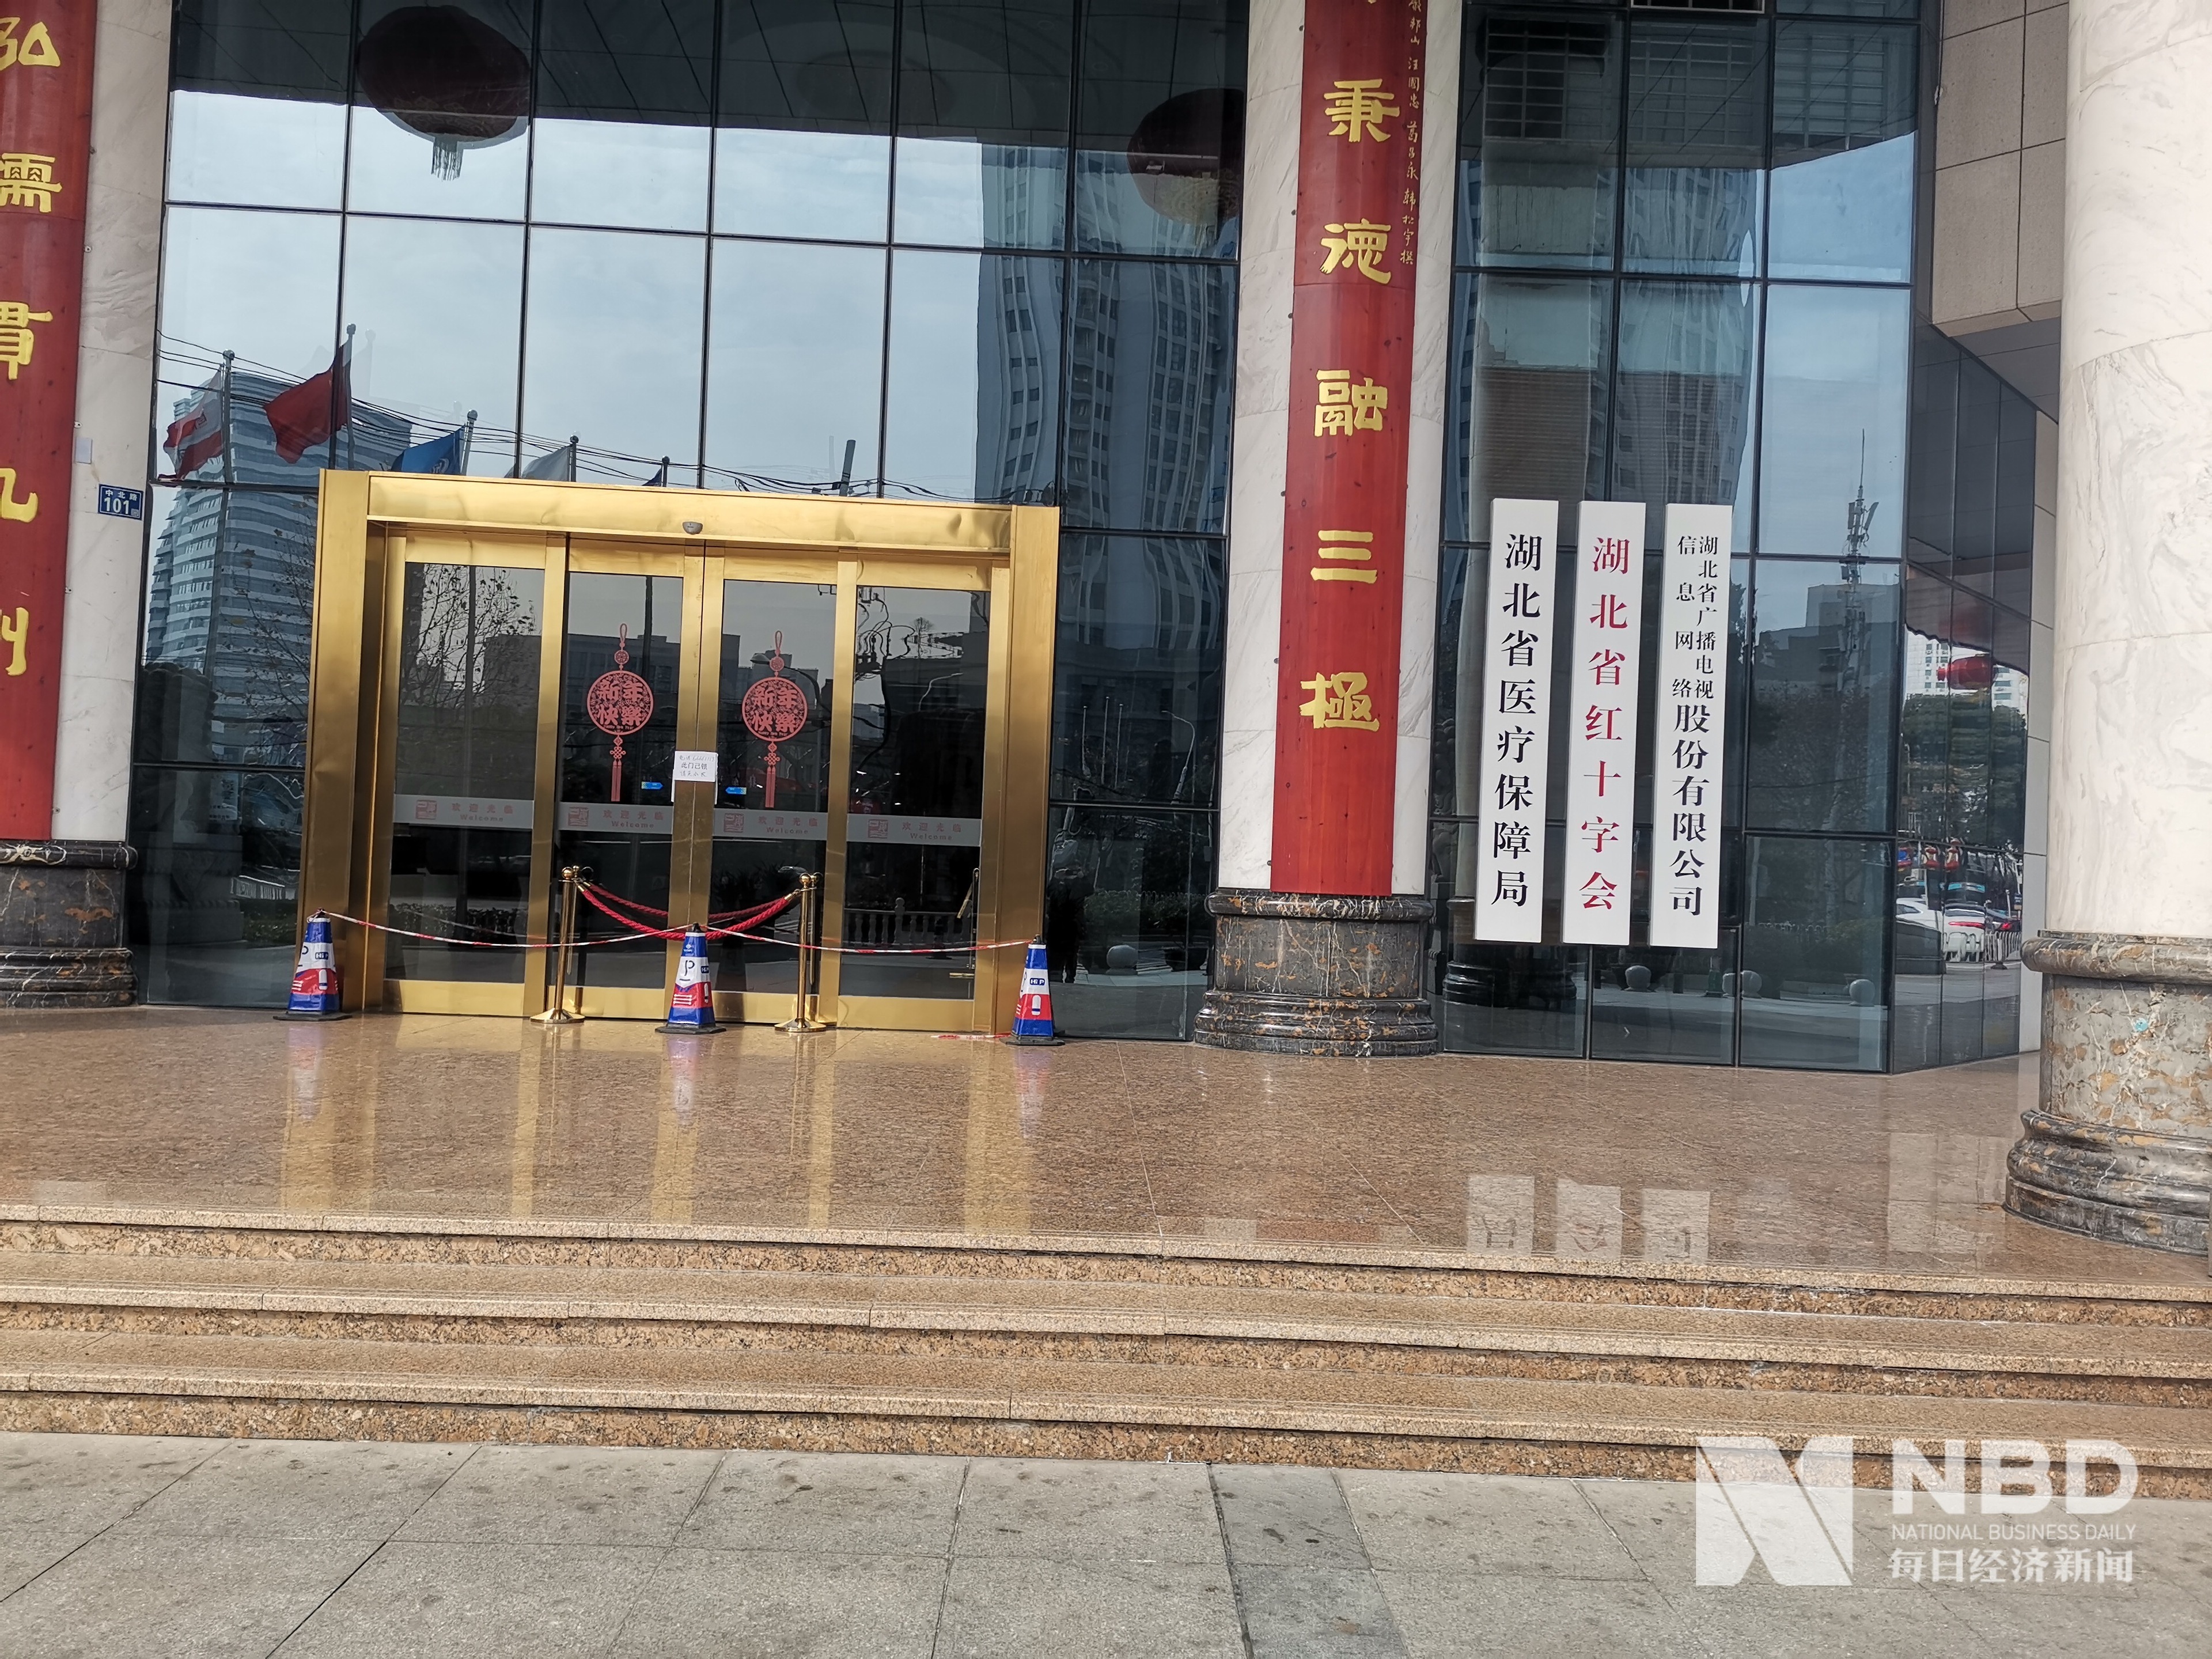 湖北省红十字会大门紧锁图片来源:每经记者 张明双 摄2月1日下午,记者